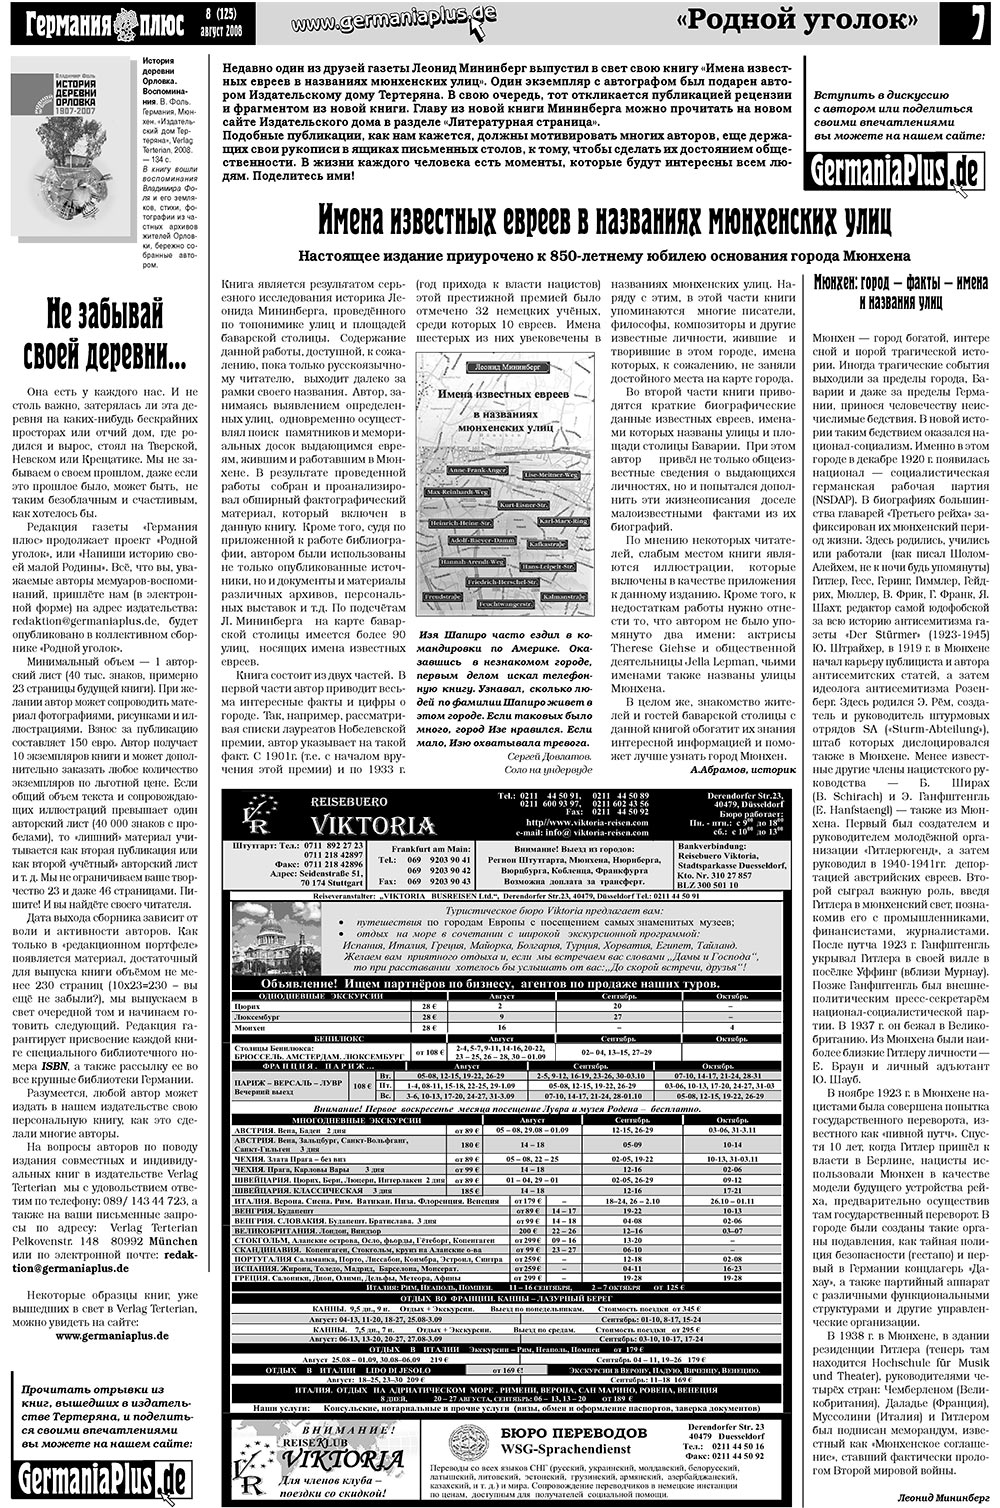 Германия плюс (газета). 2008 год, номер 8, стр. 7